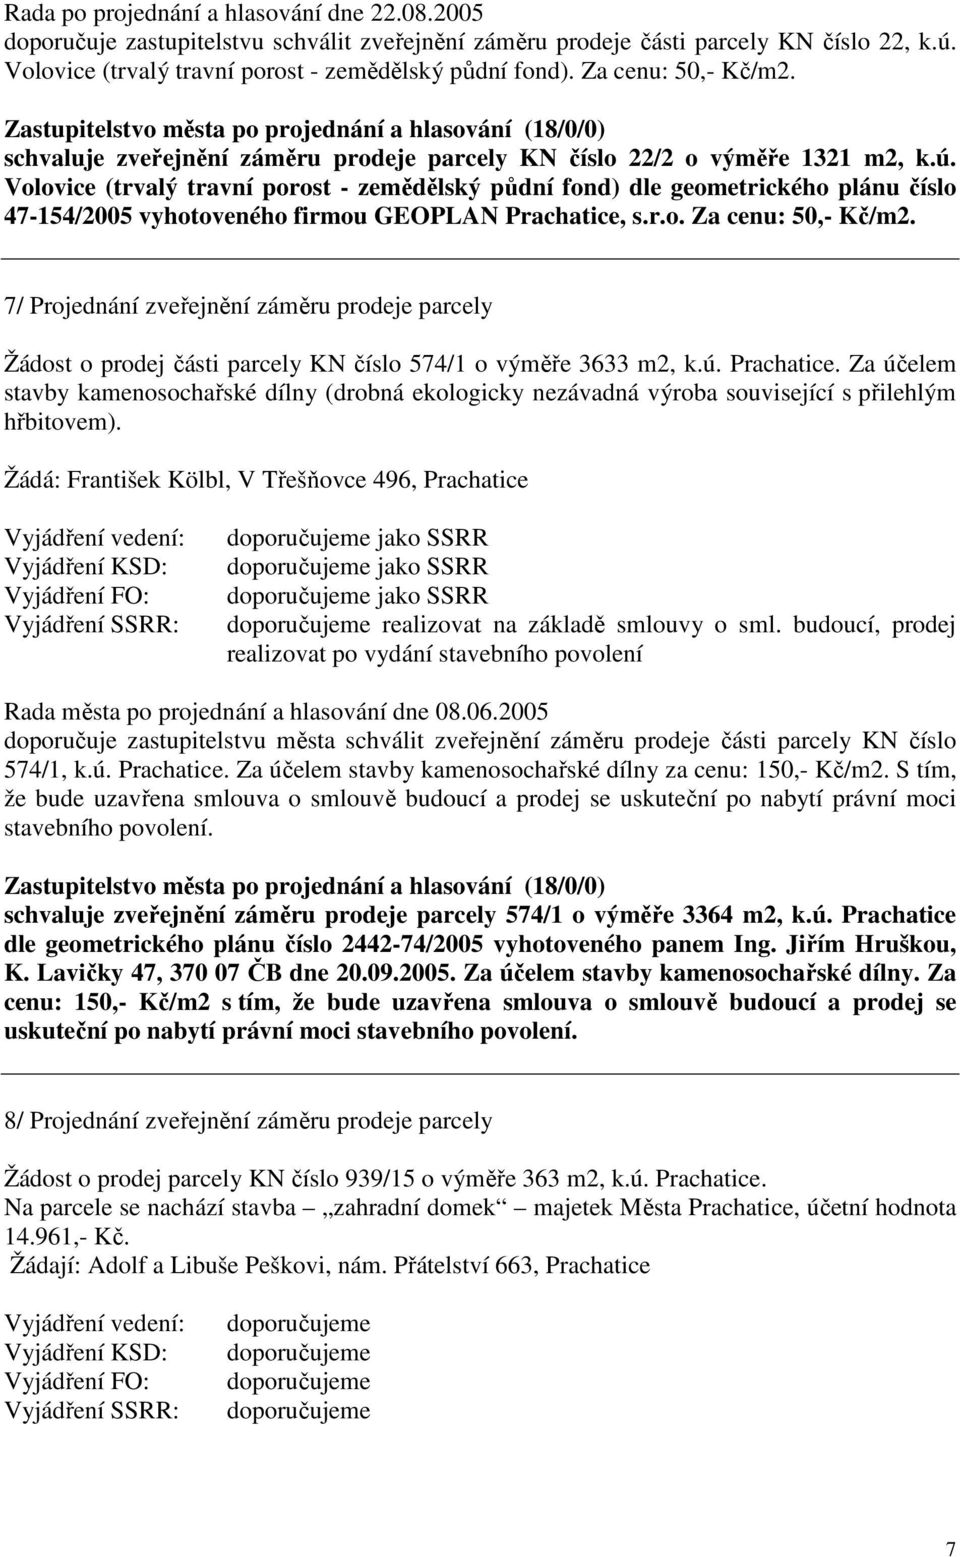 Volovice (trvalý travní porost - zemědělský půdní fond) dle geometrického plánu číslo 47-154/2005 vyhotoveného firmou GEOPLAN Prachatice, s.r.o. Za cenu: 50,- Kč/m2.